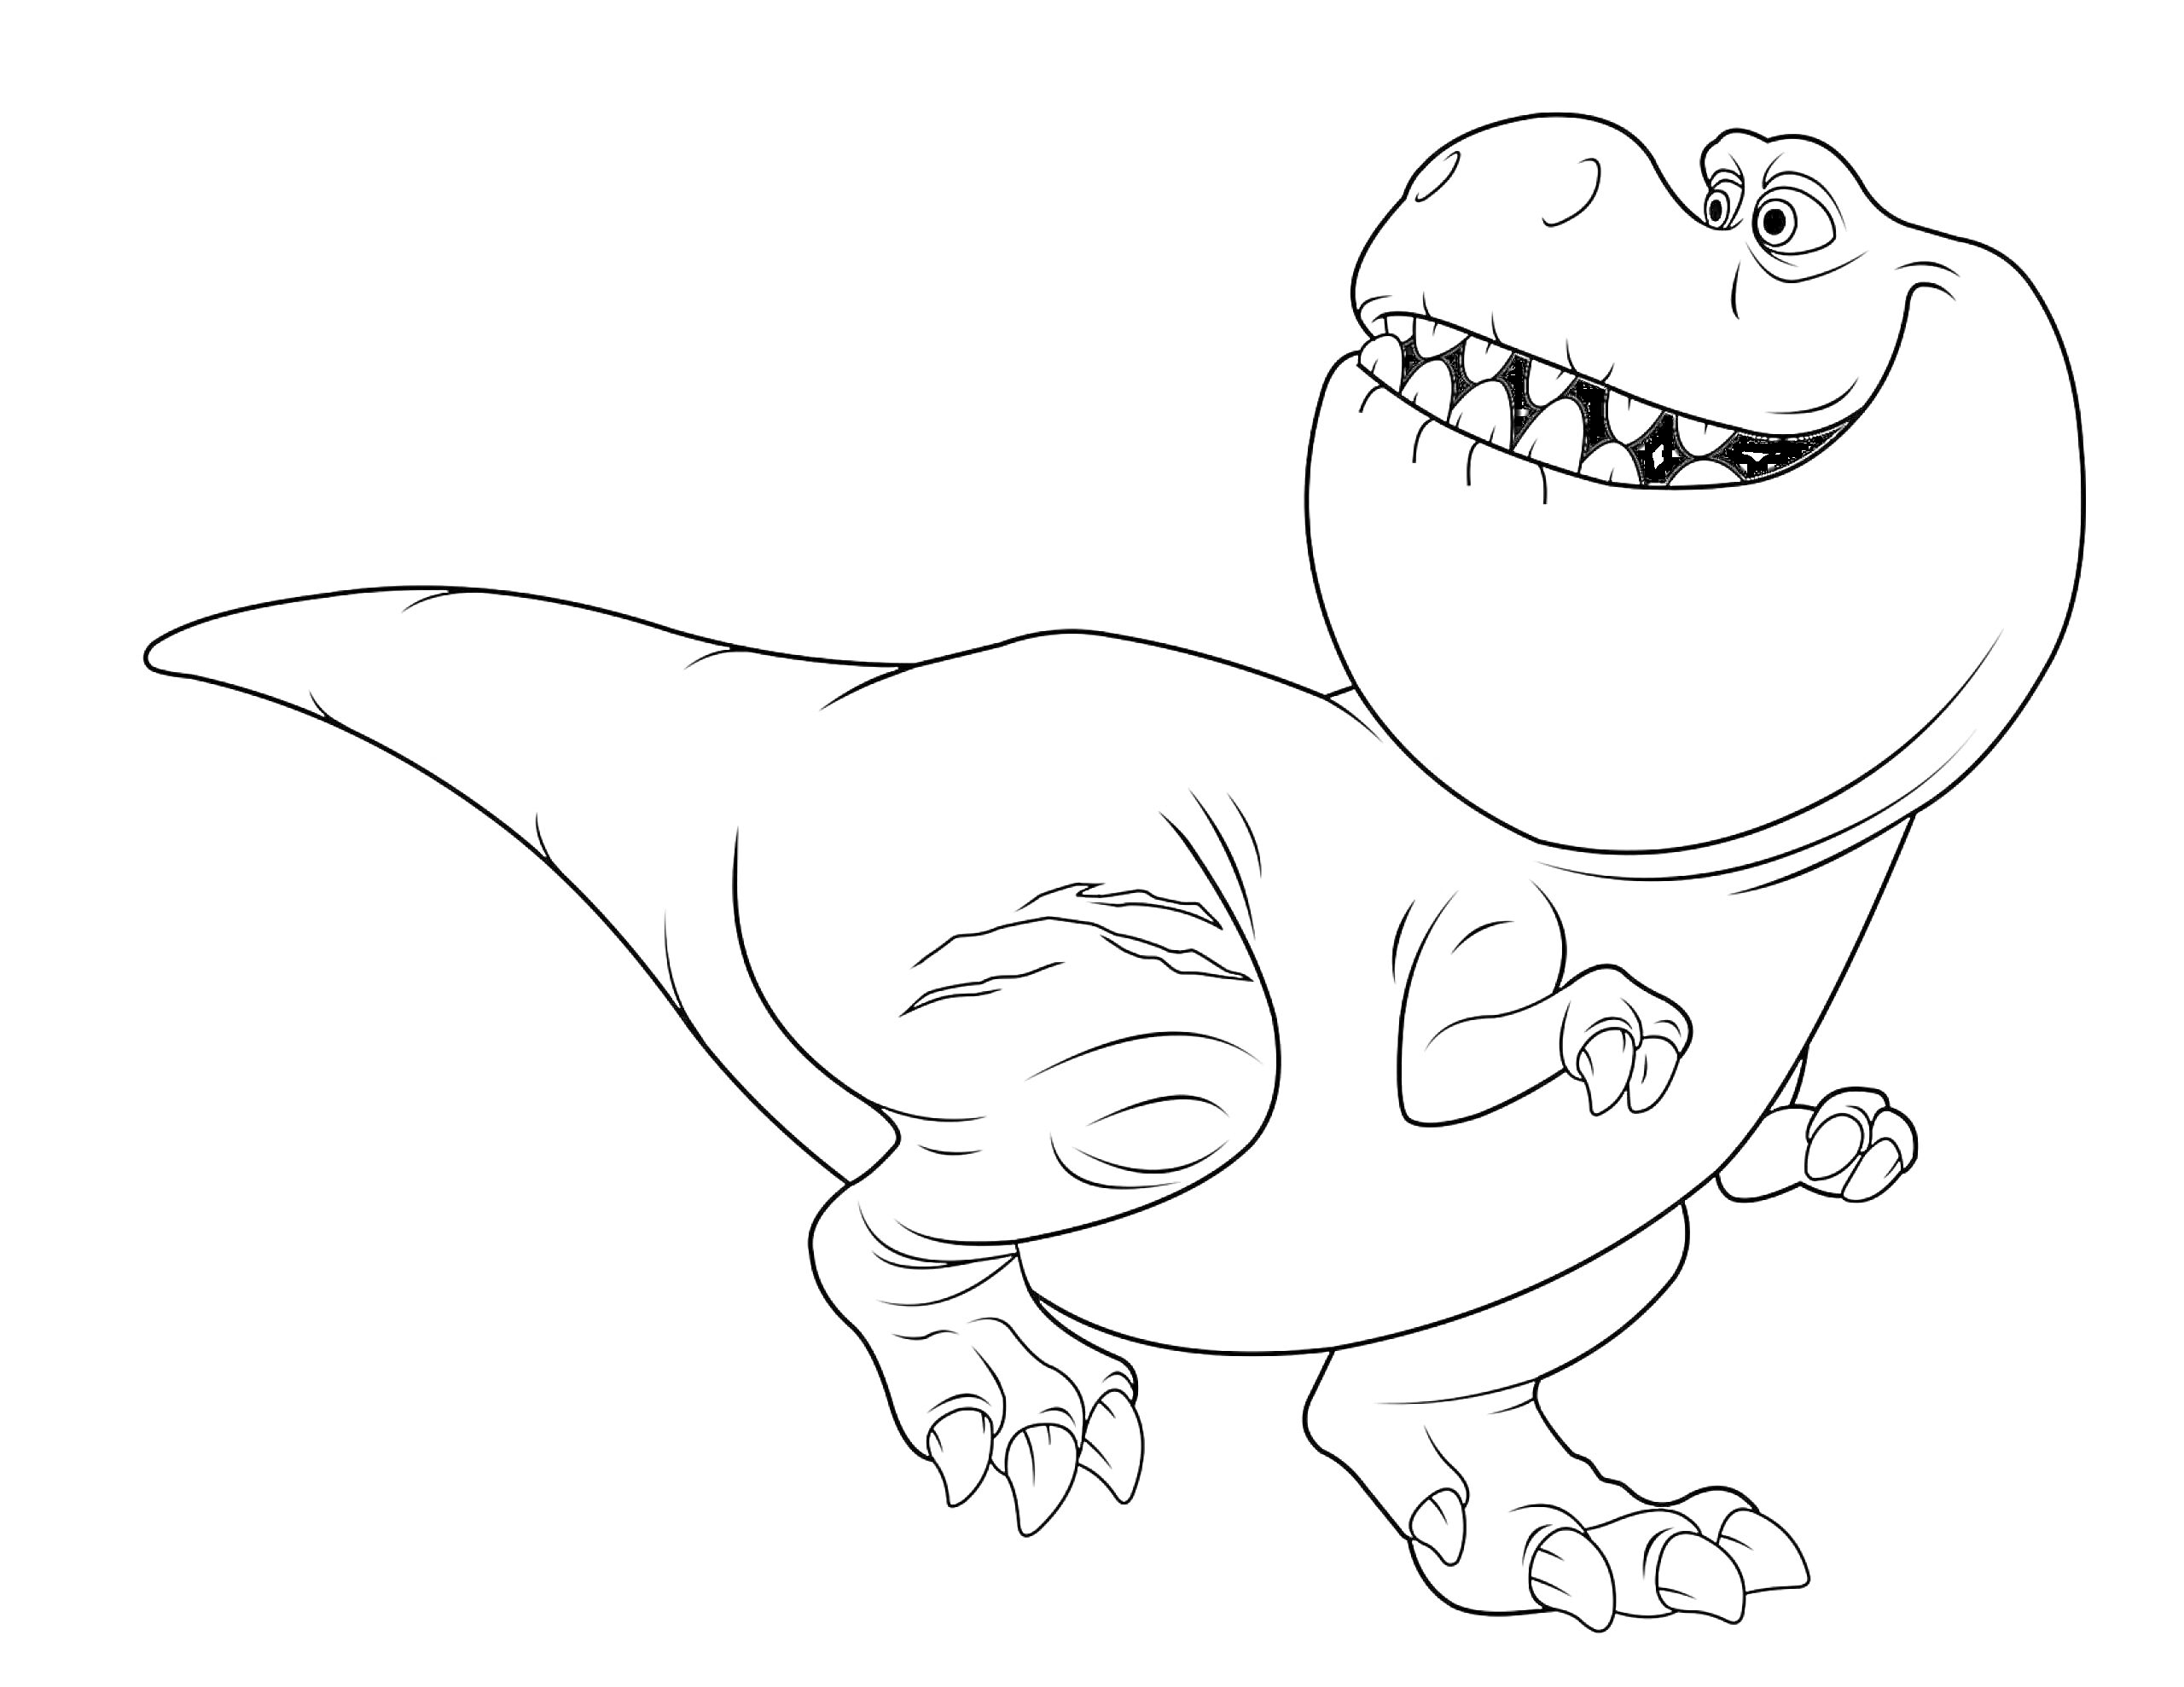 Динозавр с большими зубами и маленькими передними лапами